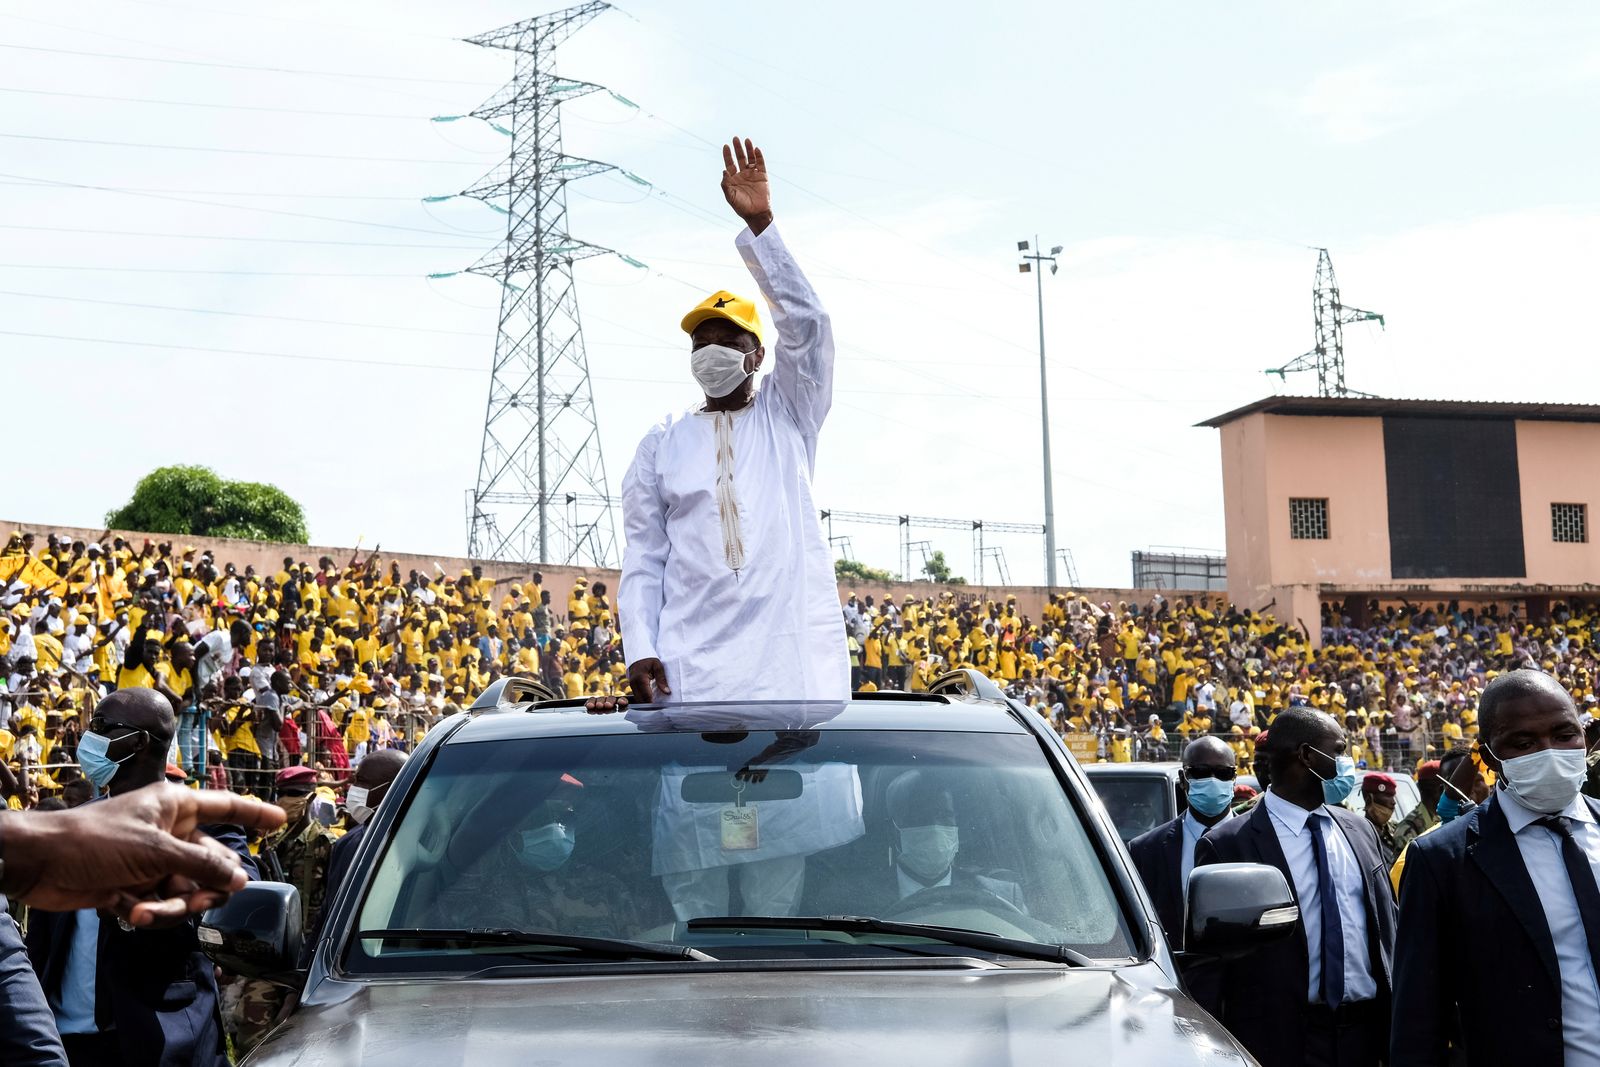 الرئيس الغيني ألفا كوندي يلوح لمؤيديه عند وصوله لحضور التجمع الانتخابي الختامي في كوناكري - 6 أكتوبر 2020 - REUTERS